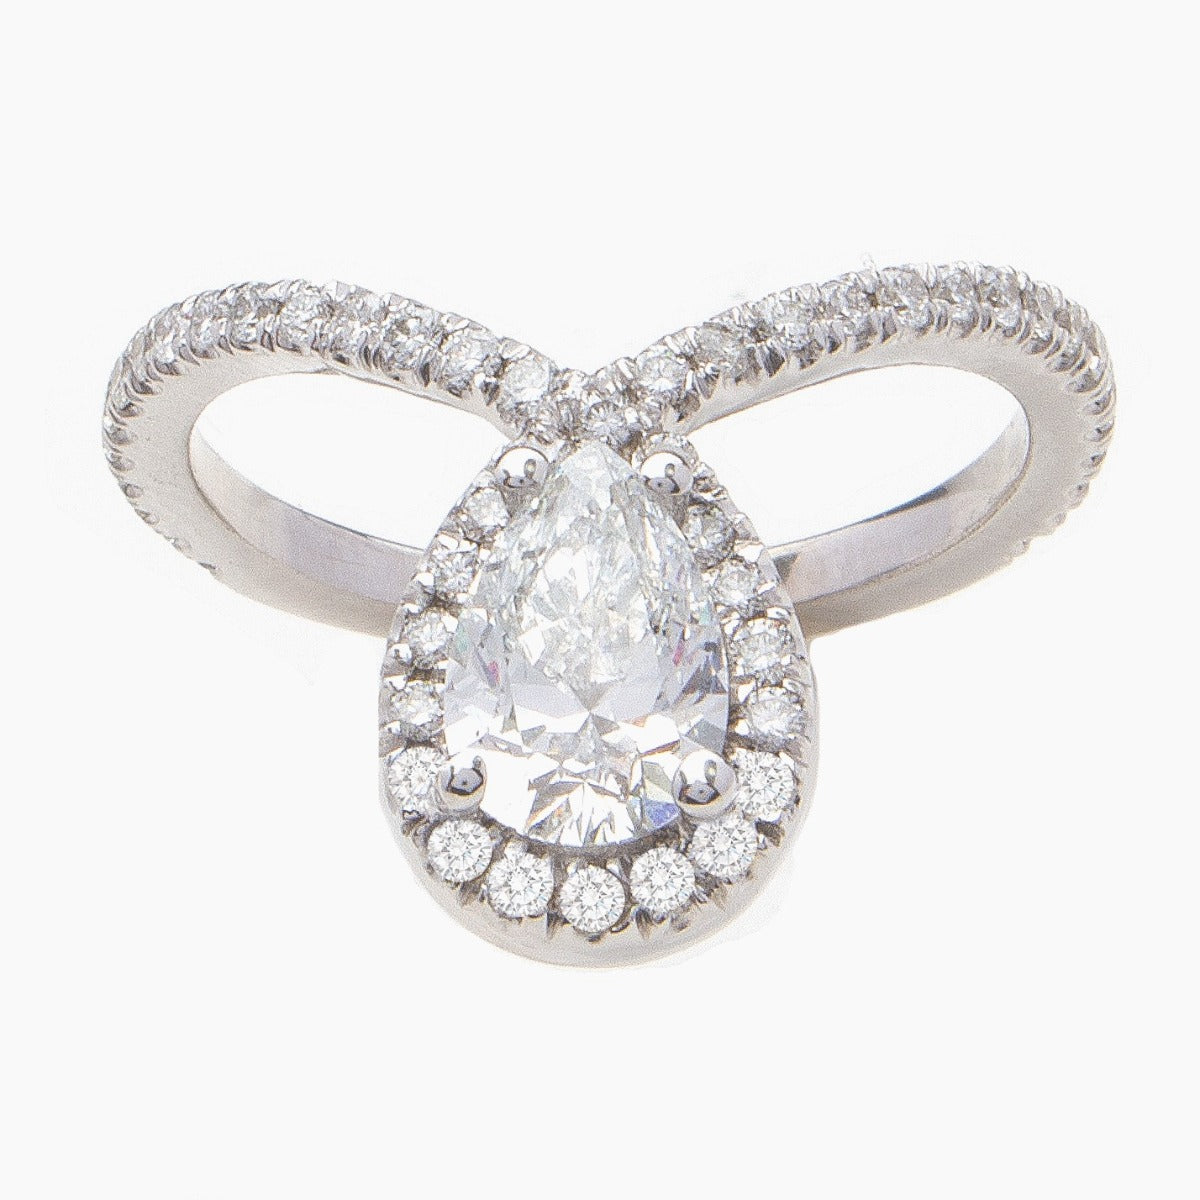 Regal Custom Design Diamond Engagement Ring